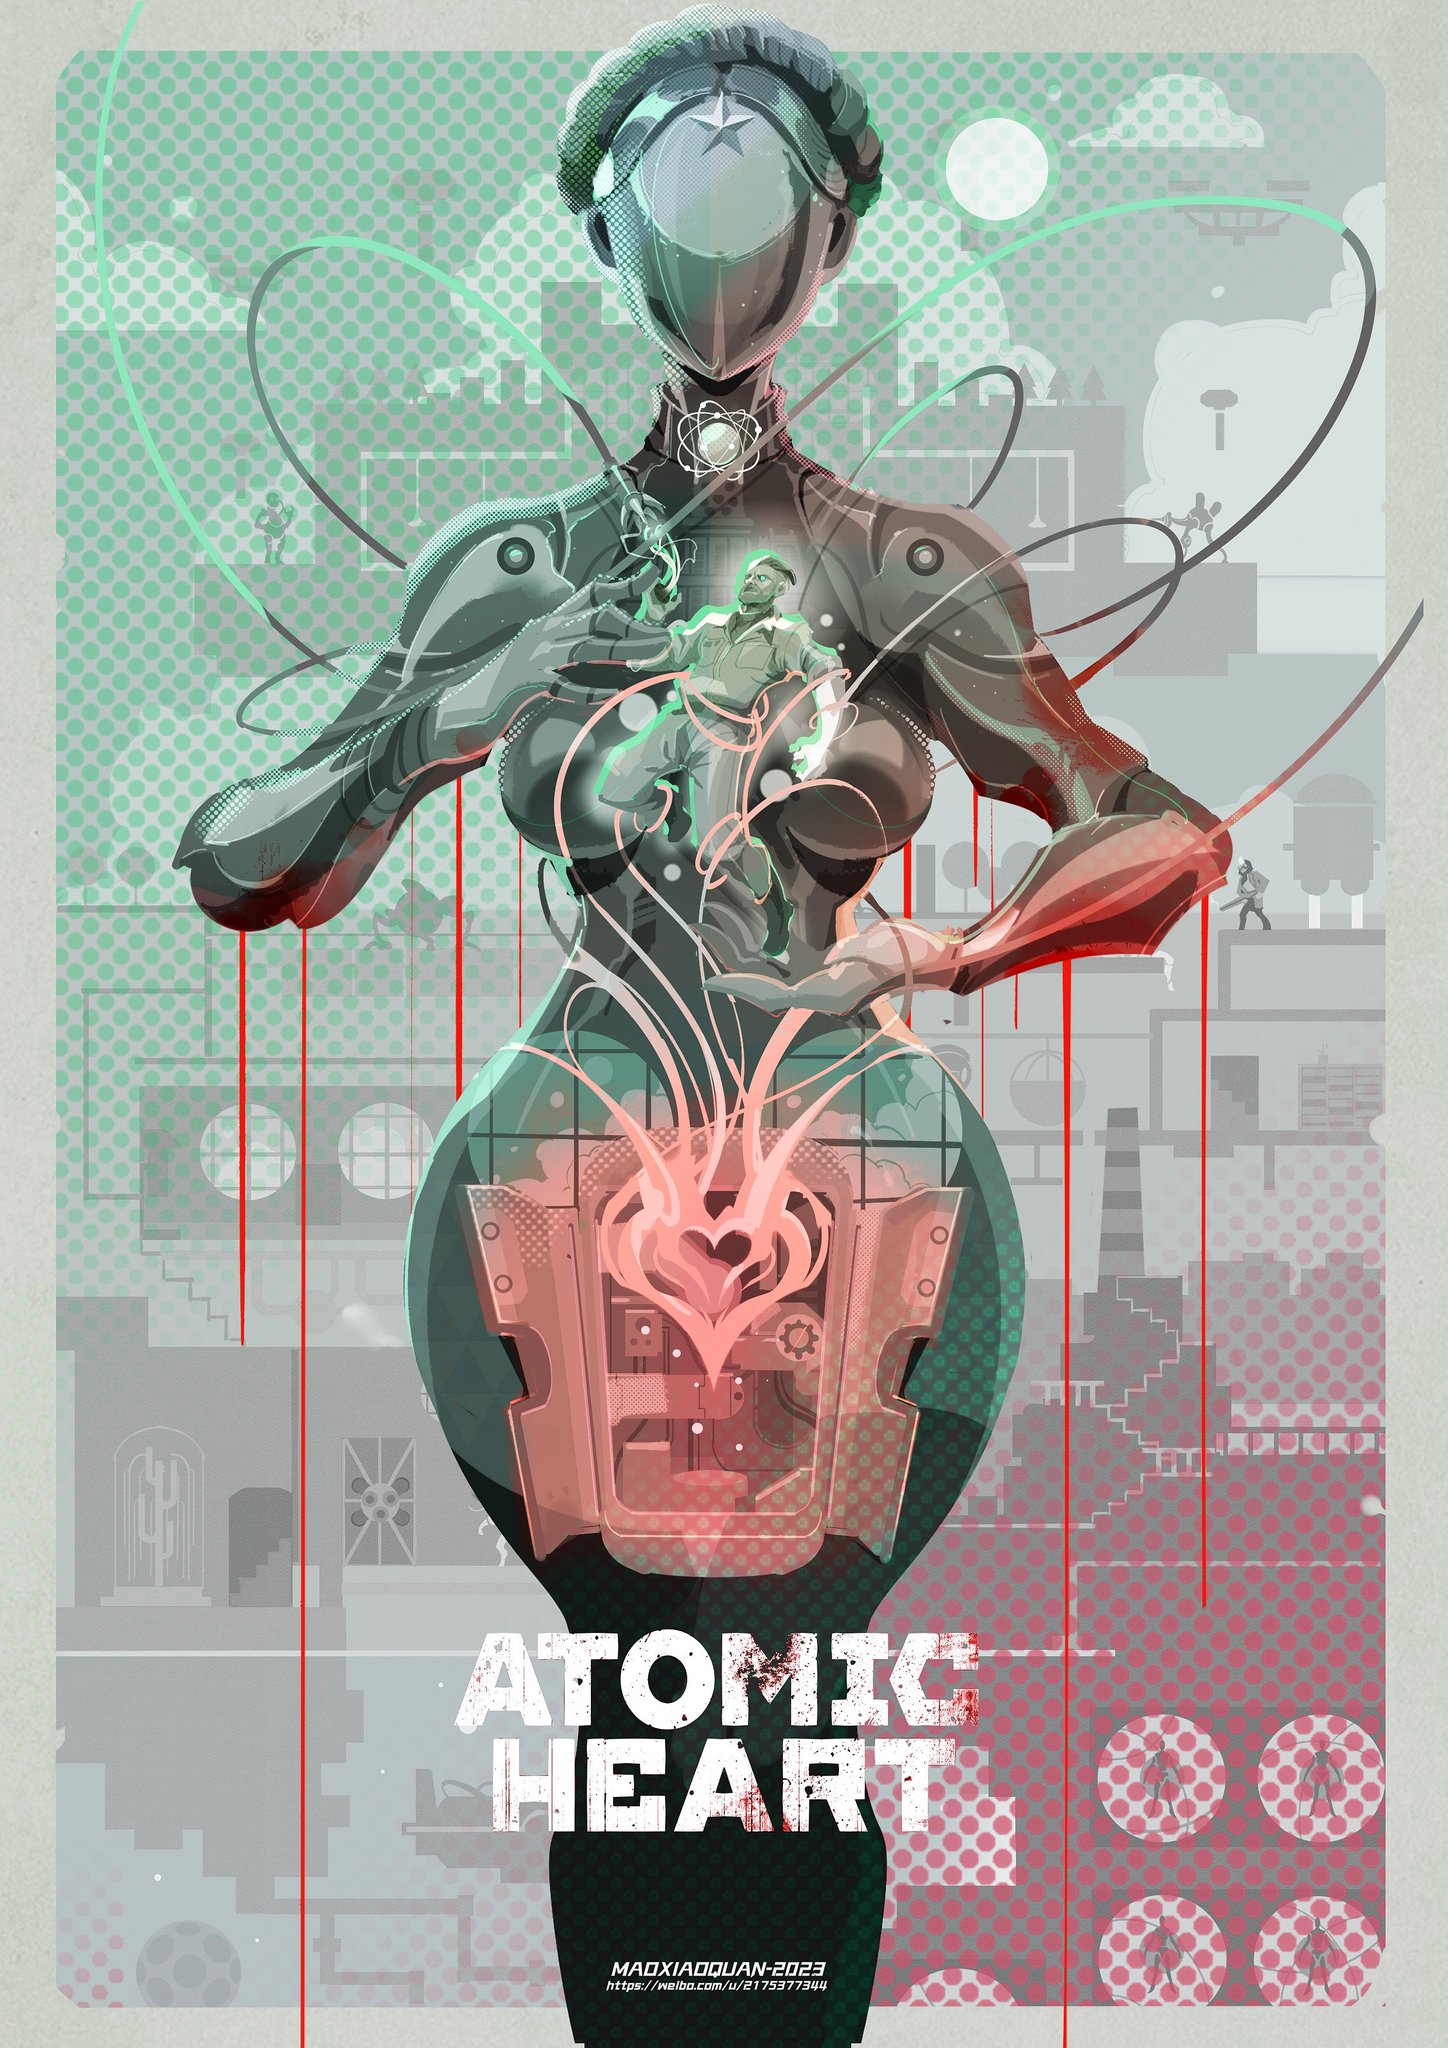 130 Atomic heart ideas in 2023